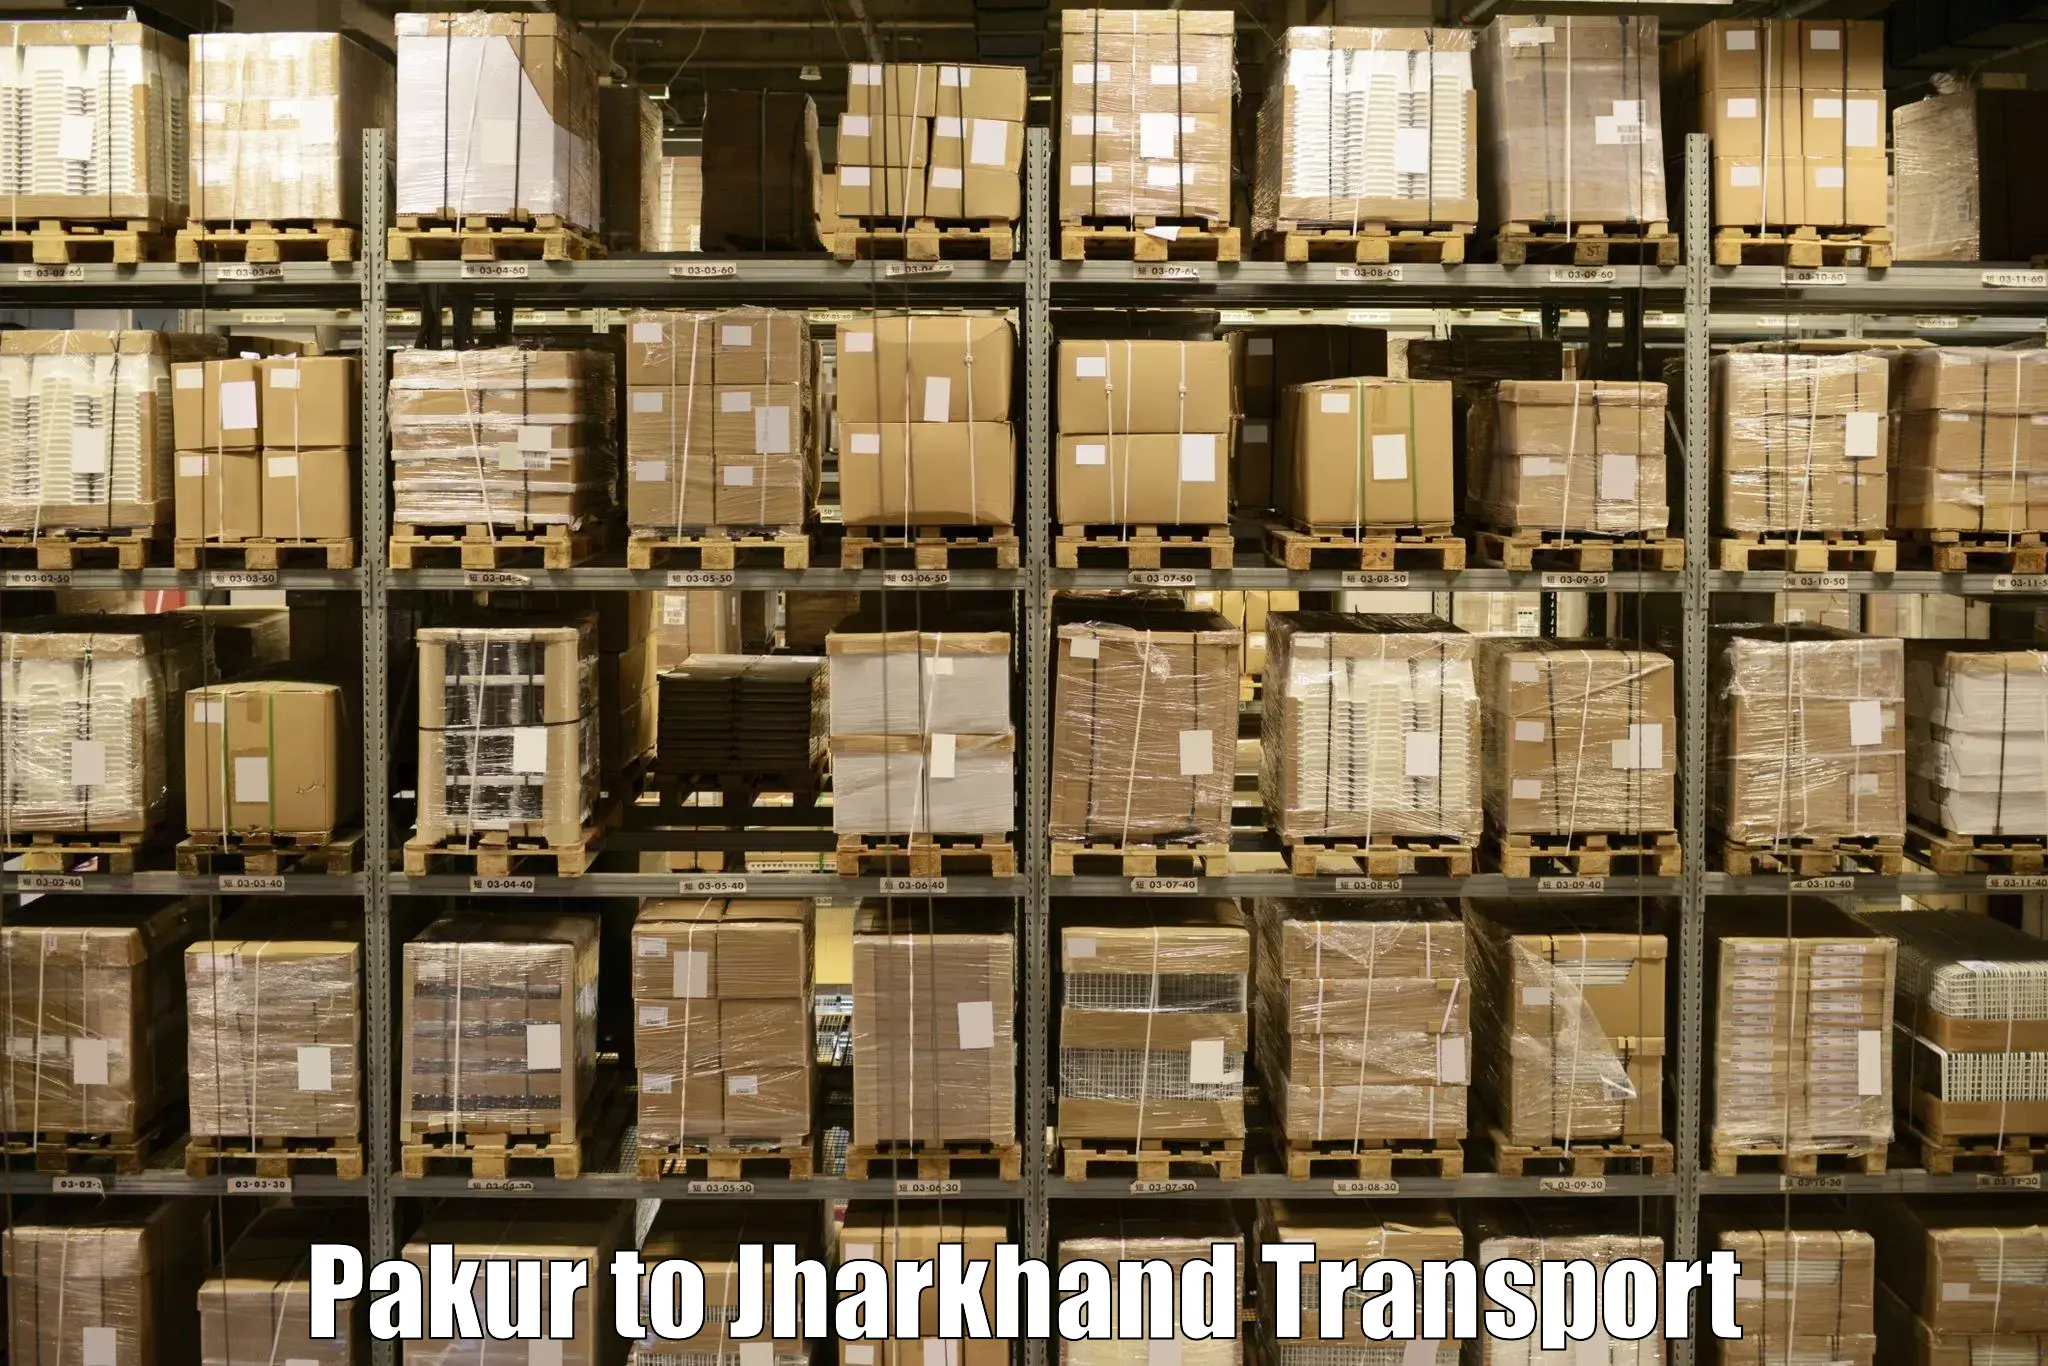 Door to door transport services Pakur to Boarijore